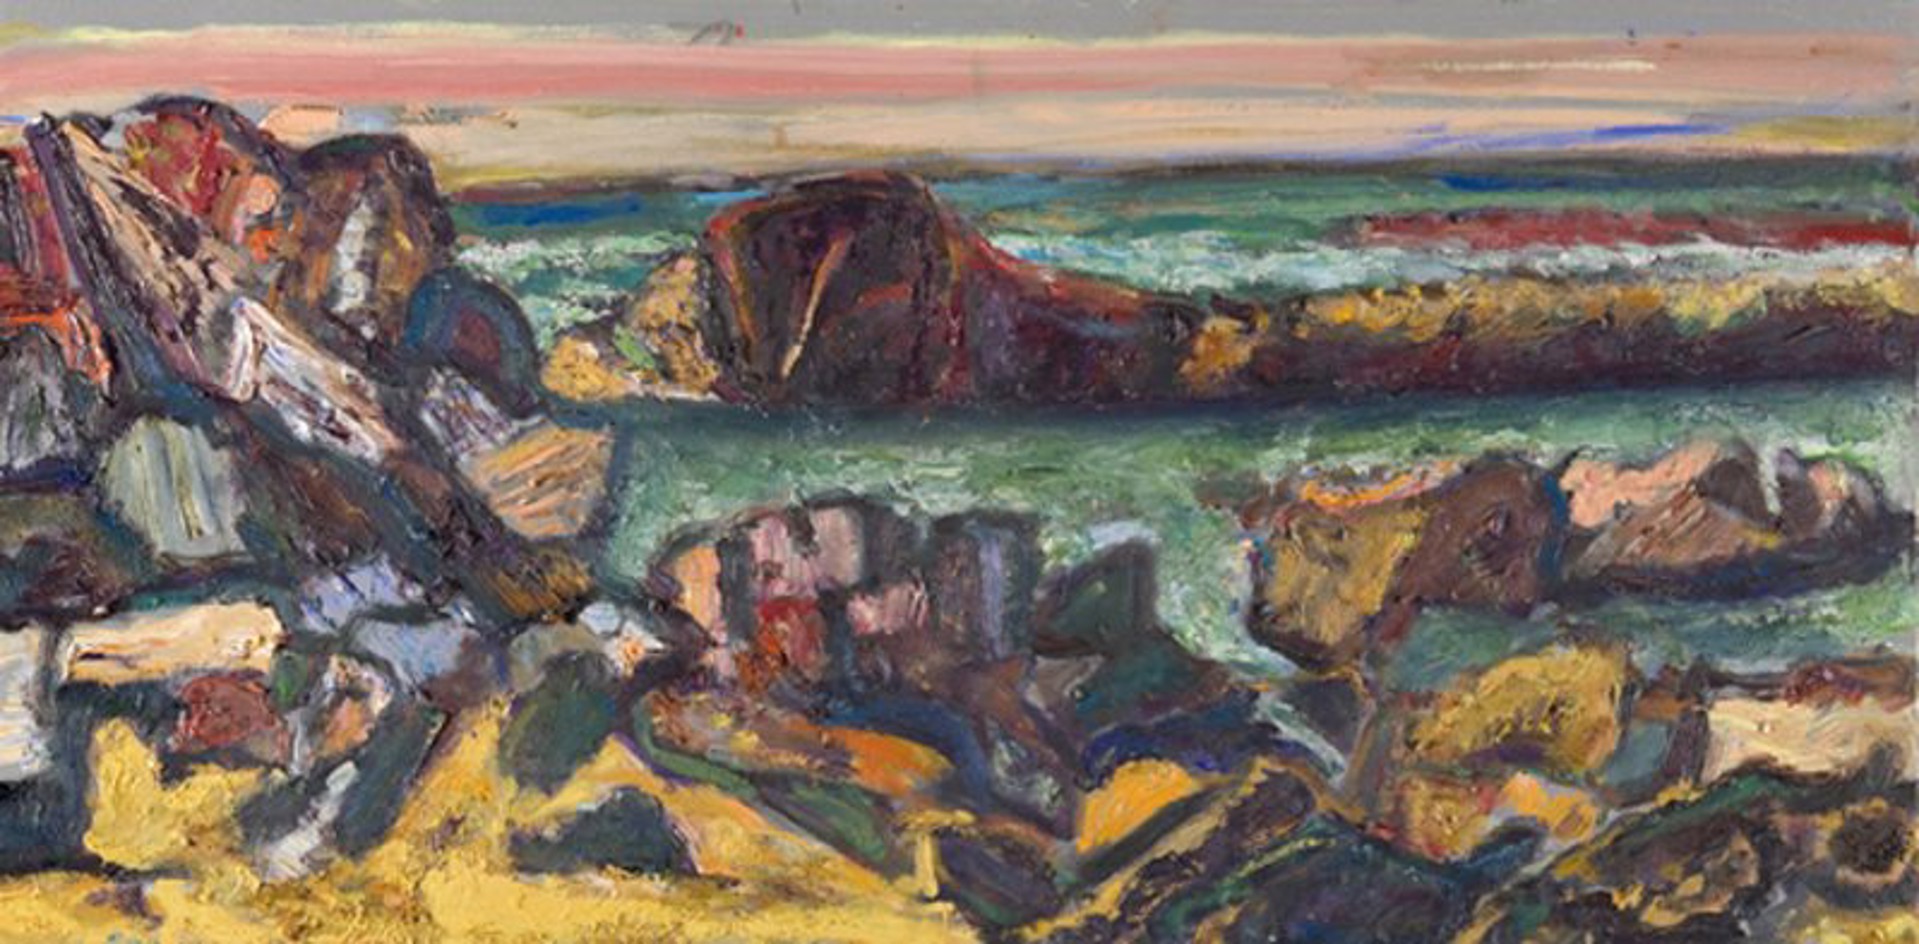 Low Tide Rocks by Bernard Chaet